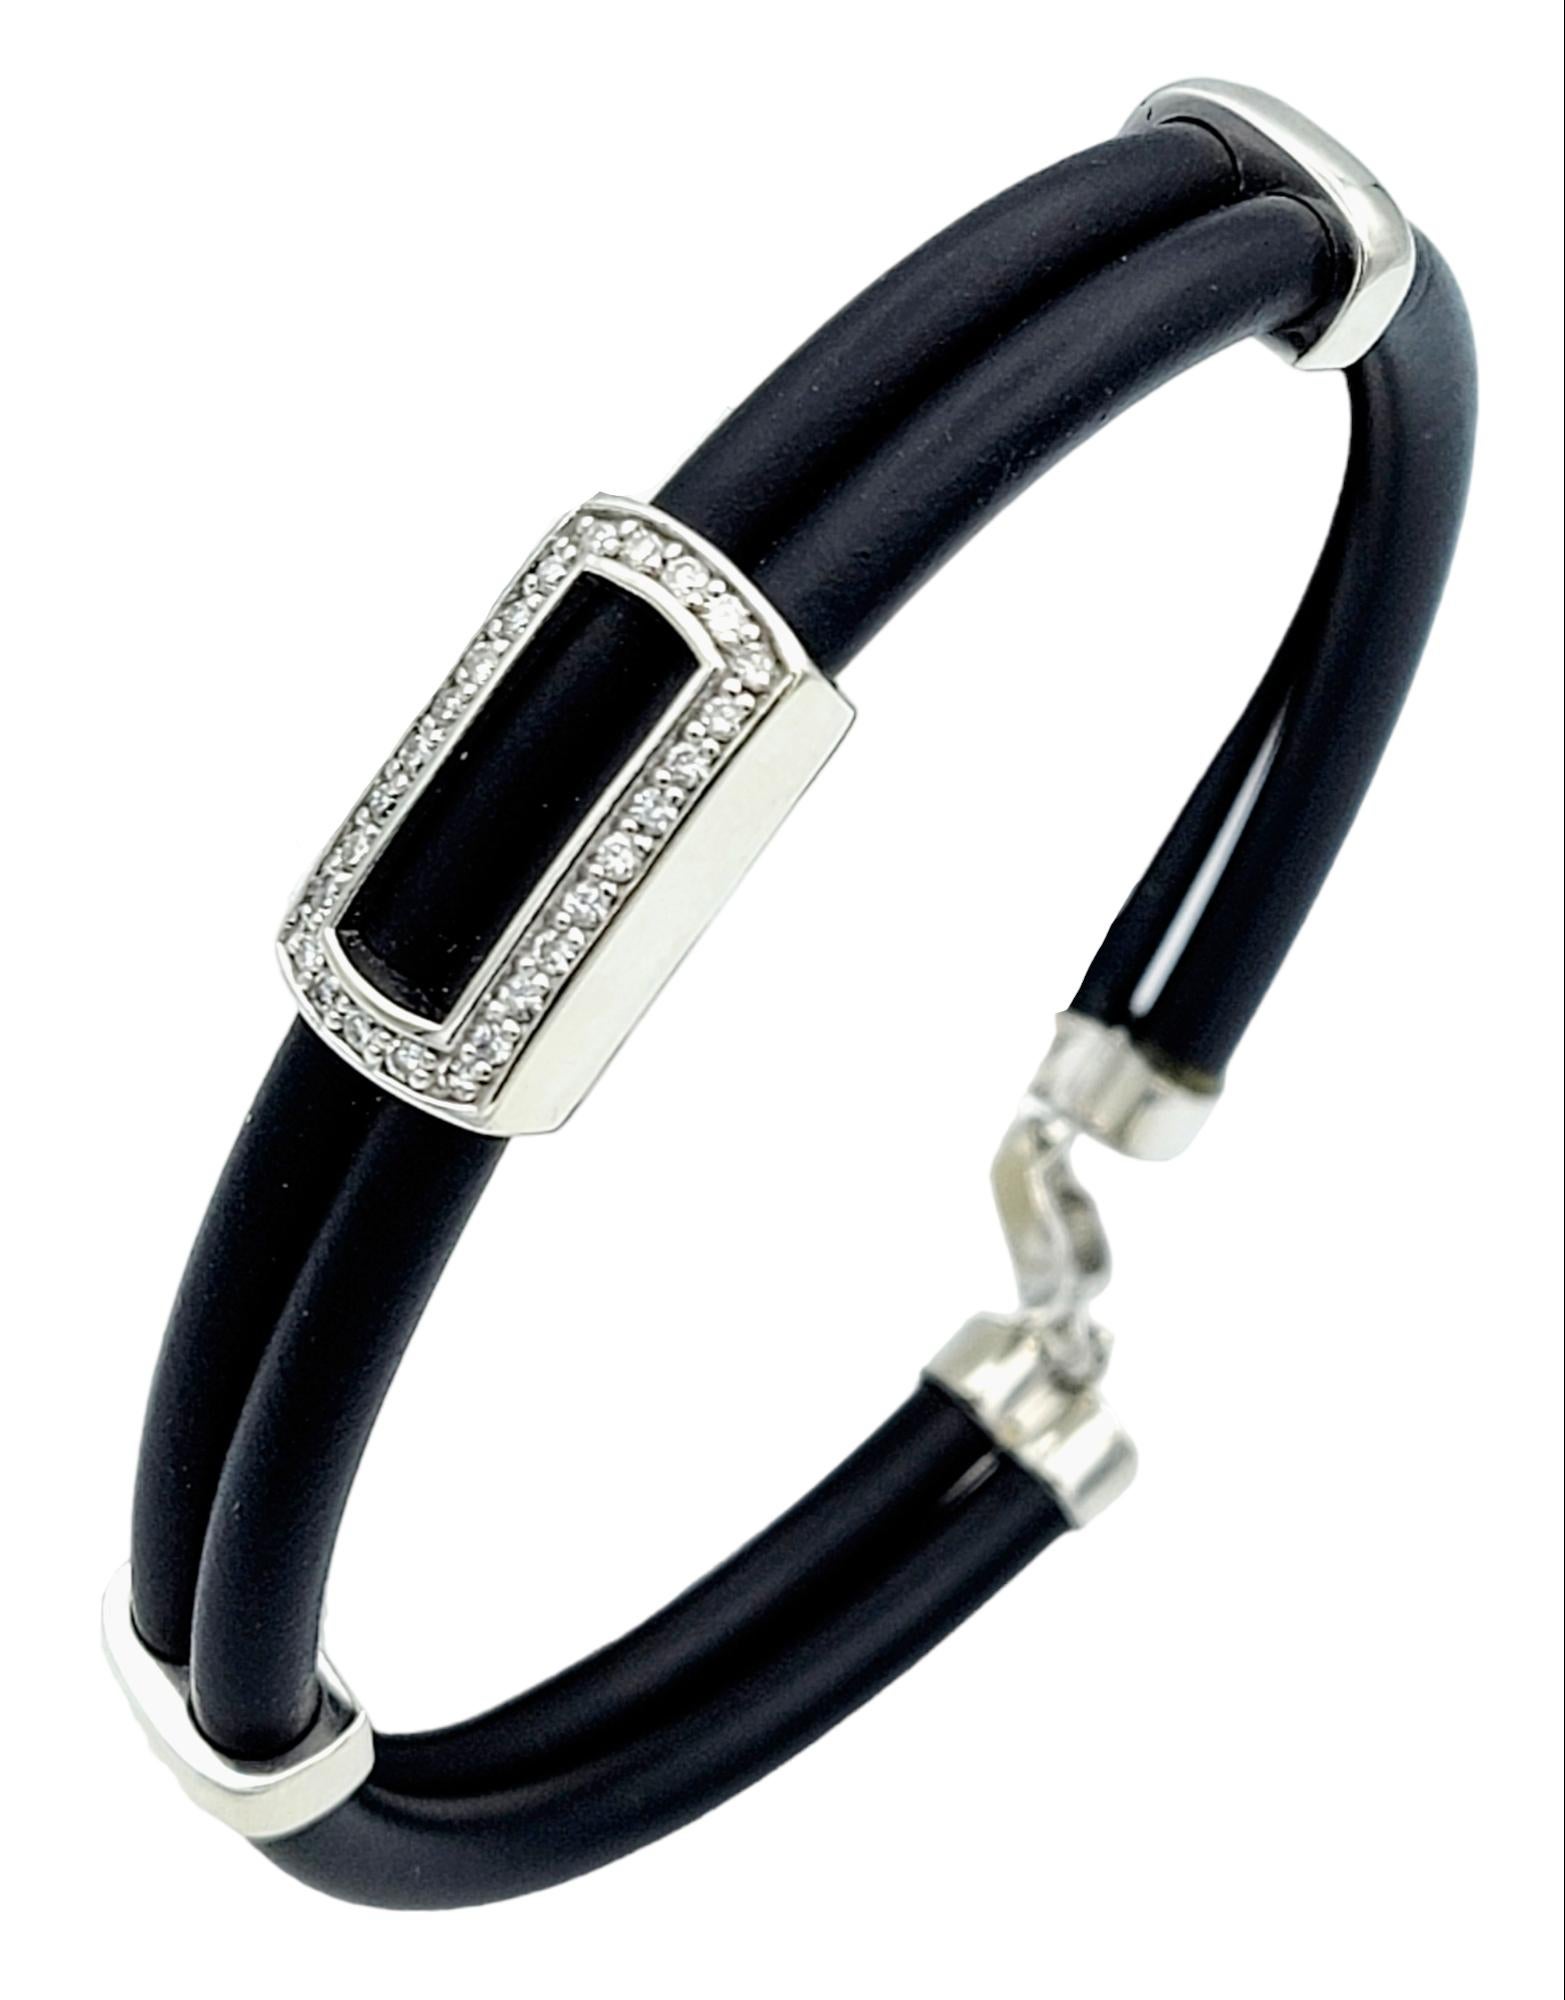 Ce bracelet en cordon de caoutchouc noir Effy est une fusion frappante de design moderne et de sophistication intemporelle. Fabriquée avec une attention méticuleuse aux détails, cette pièce exsude un côté contemporain tout en conservant un air